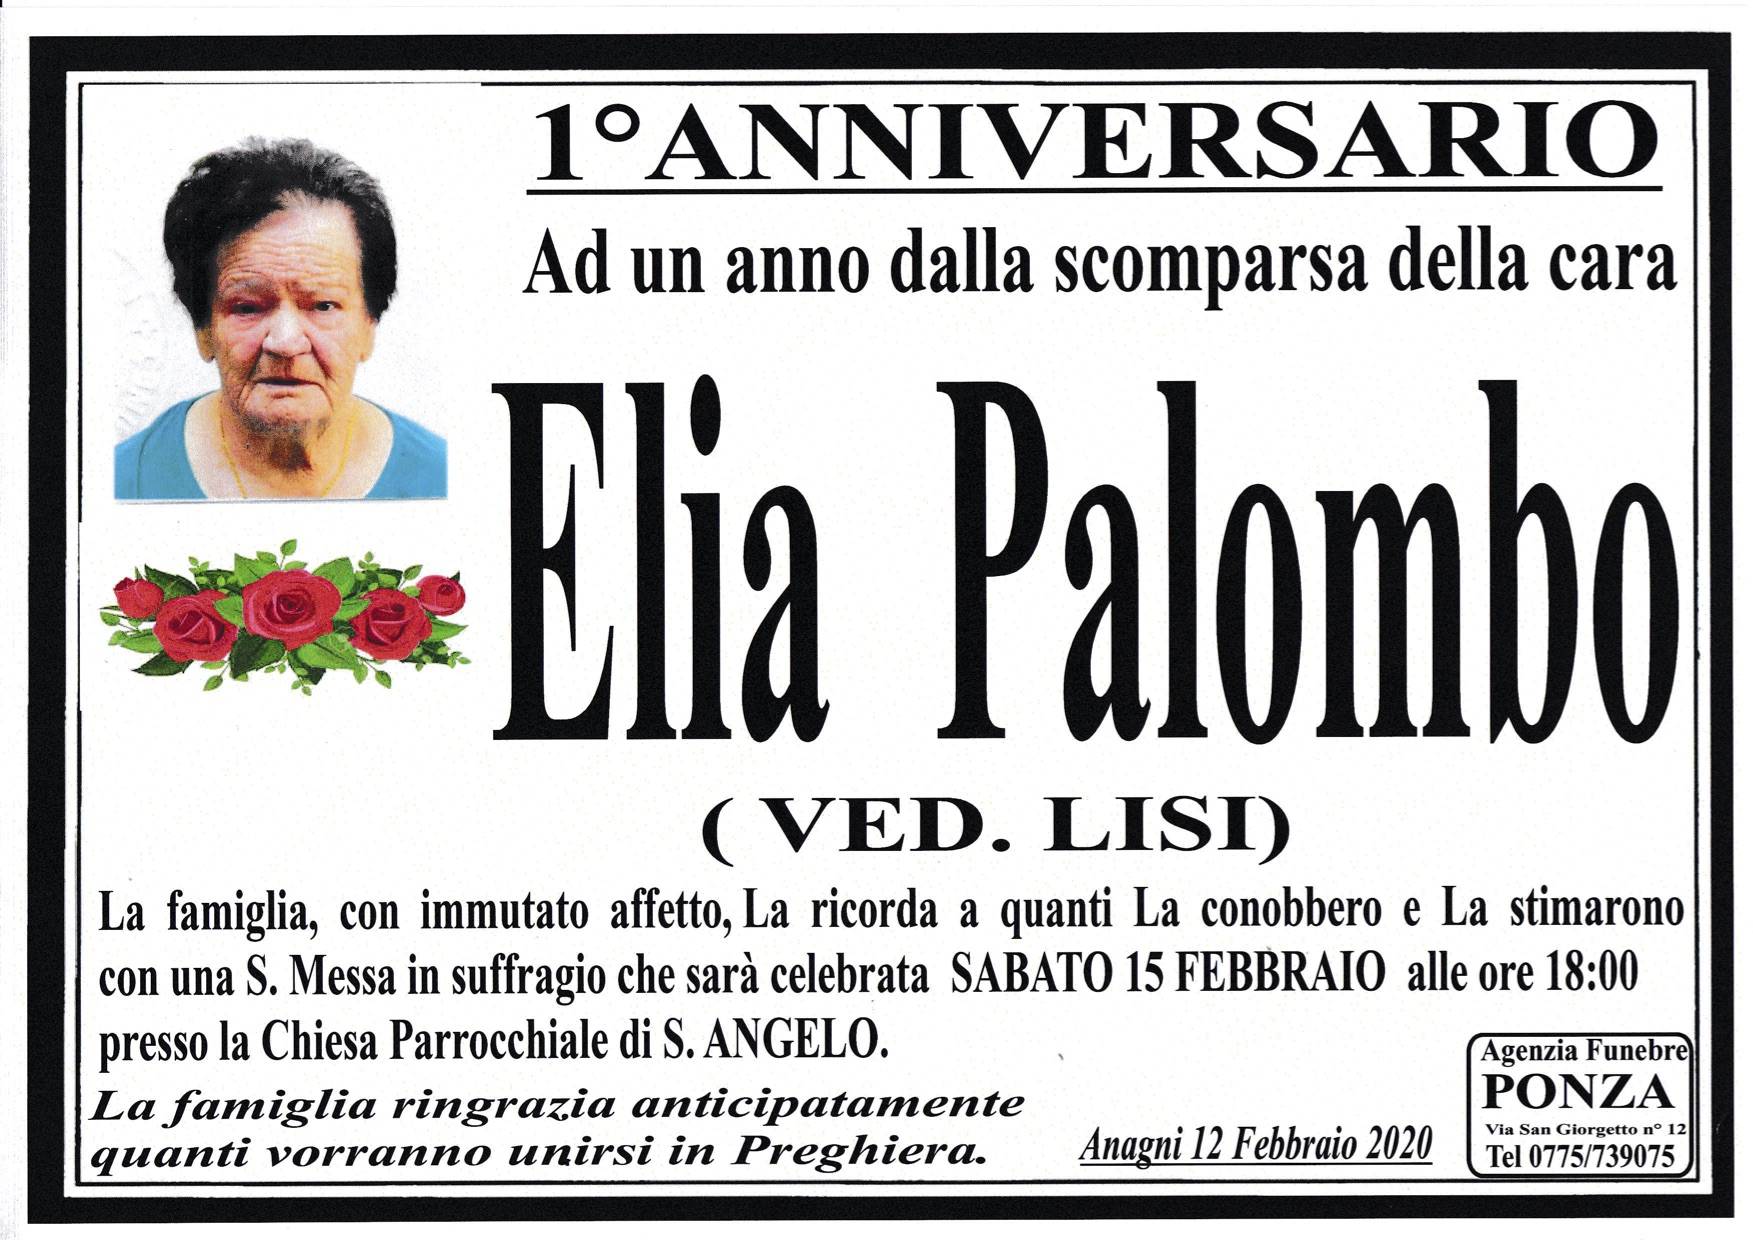 Elia Palombo